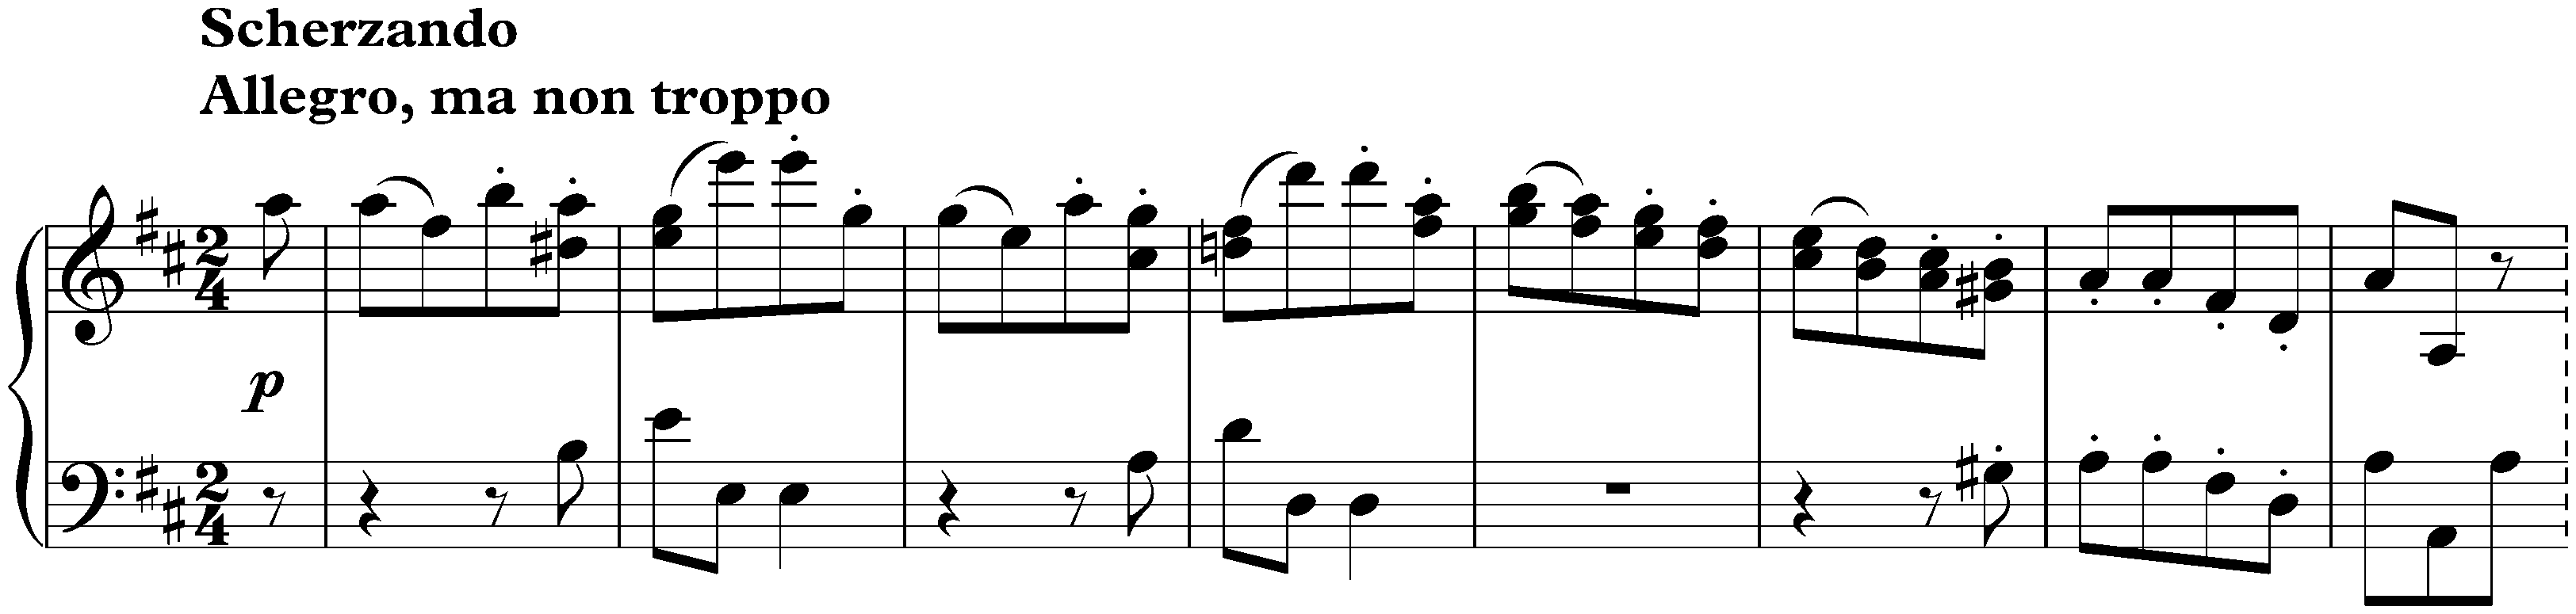 Sonata in D major, WoO 47 no. 3; 3. Scherzando: Allegro, ma non troppo